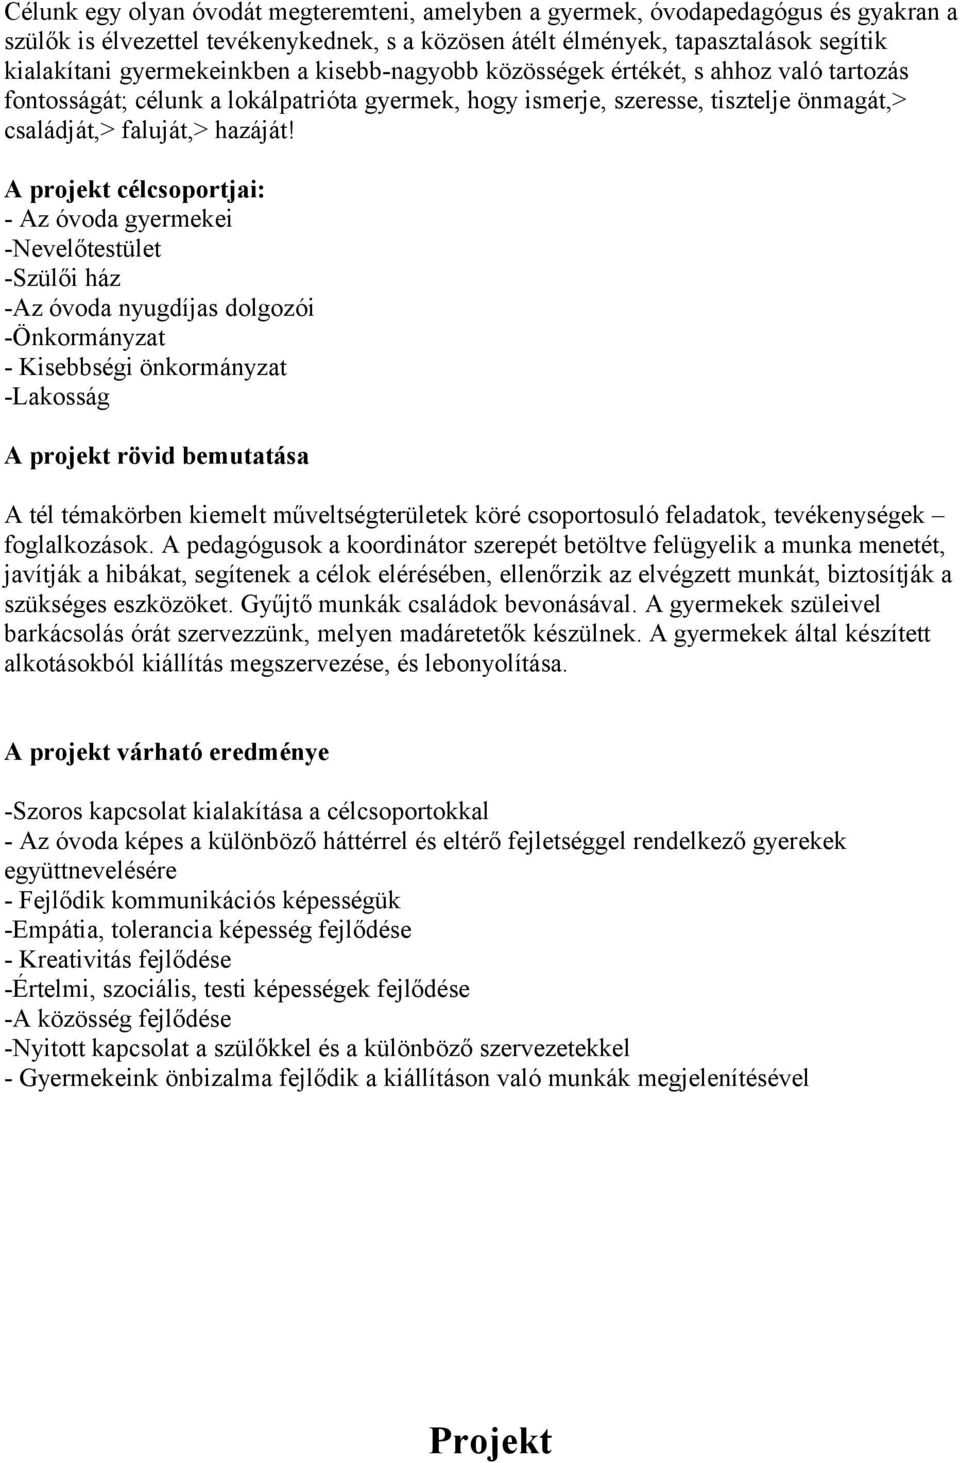 Négy hetes projekt A Sombereki Óvoda Intézményében - PDF Ingyenes letöltés